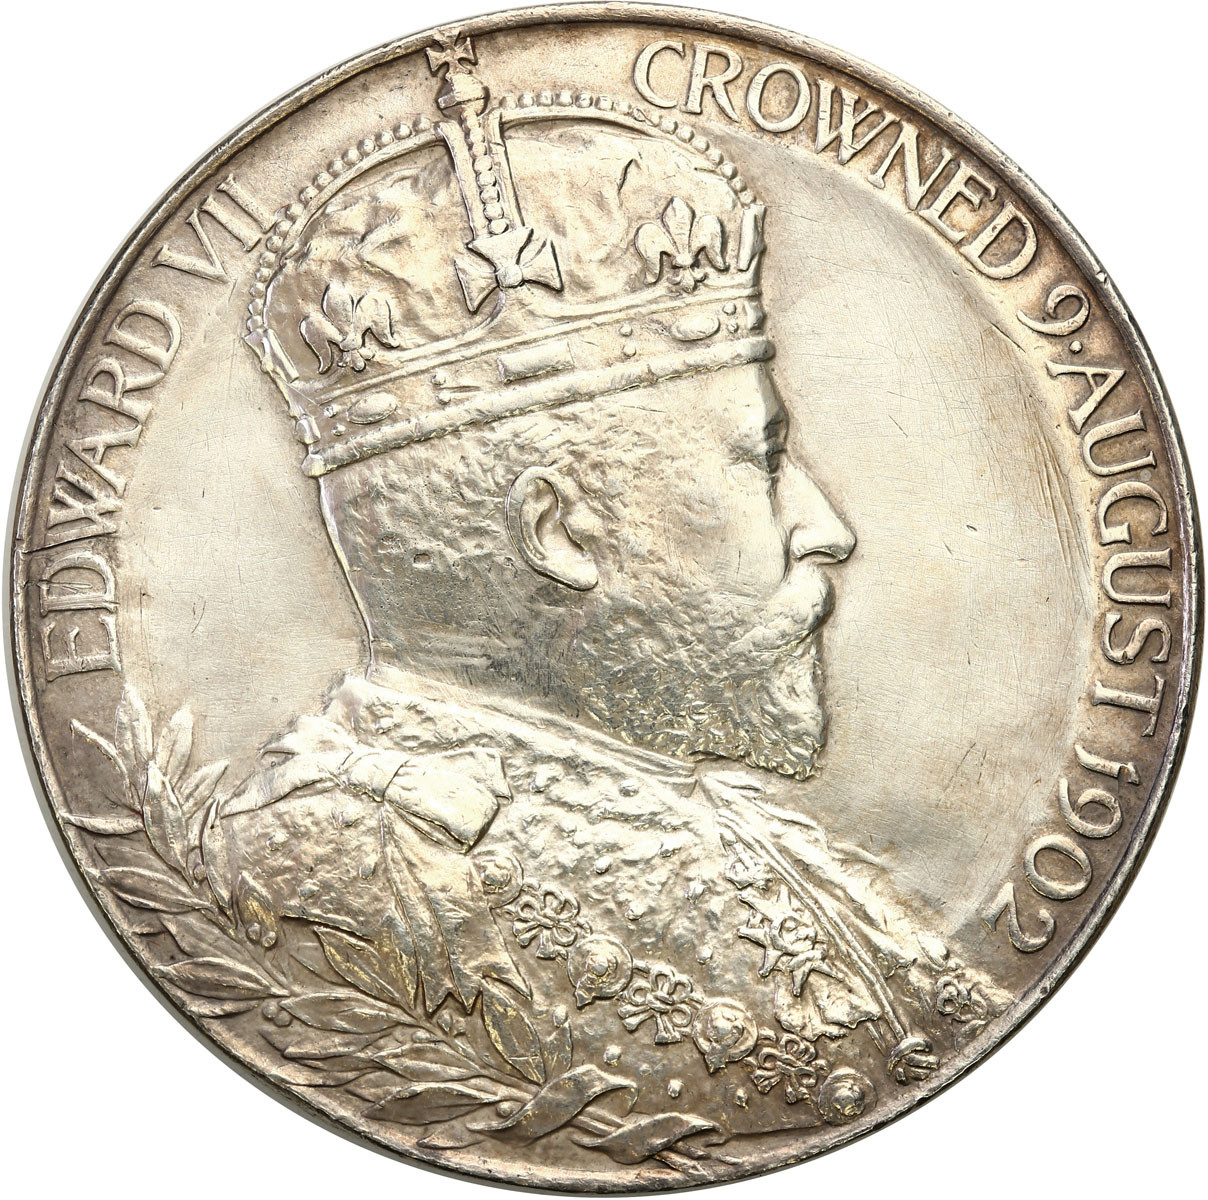 Wielka Brytania, Edward VII. 1901 – 1910, Oficjalny medal koronacyjny, 1902, srebro